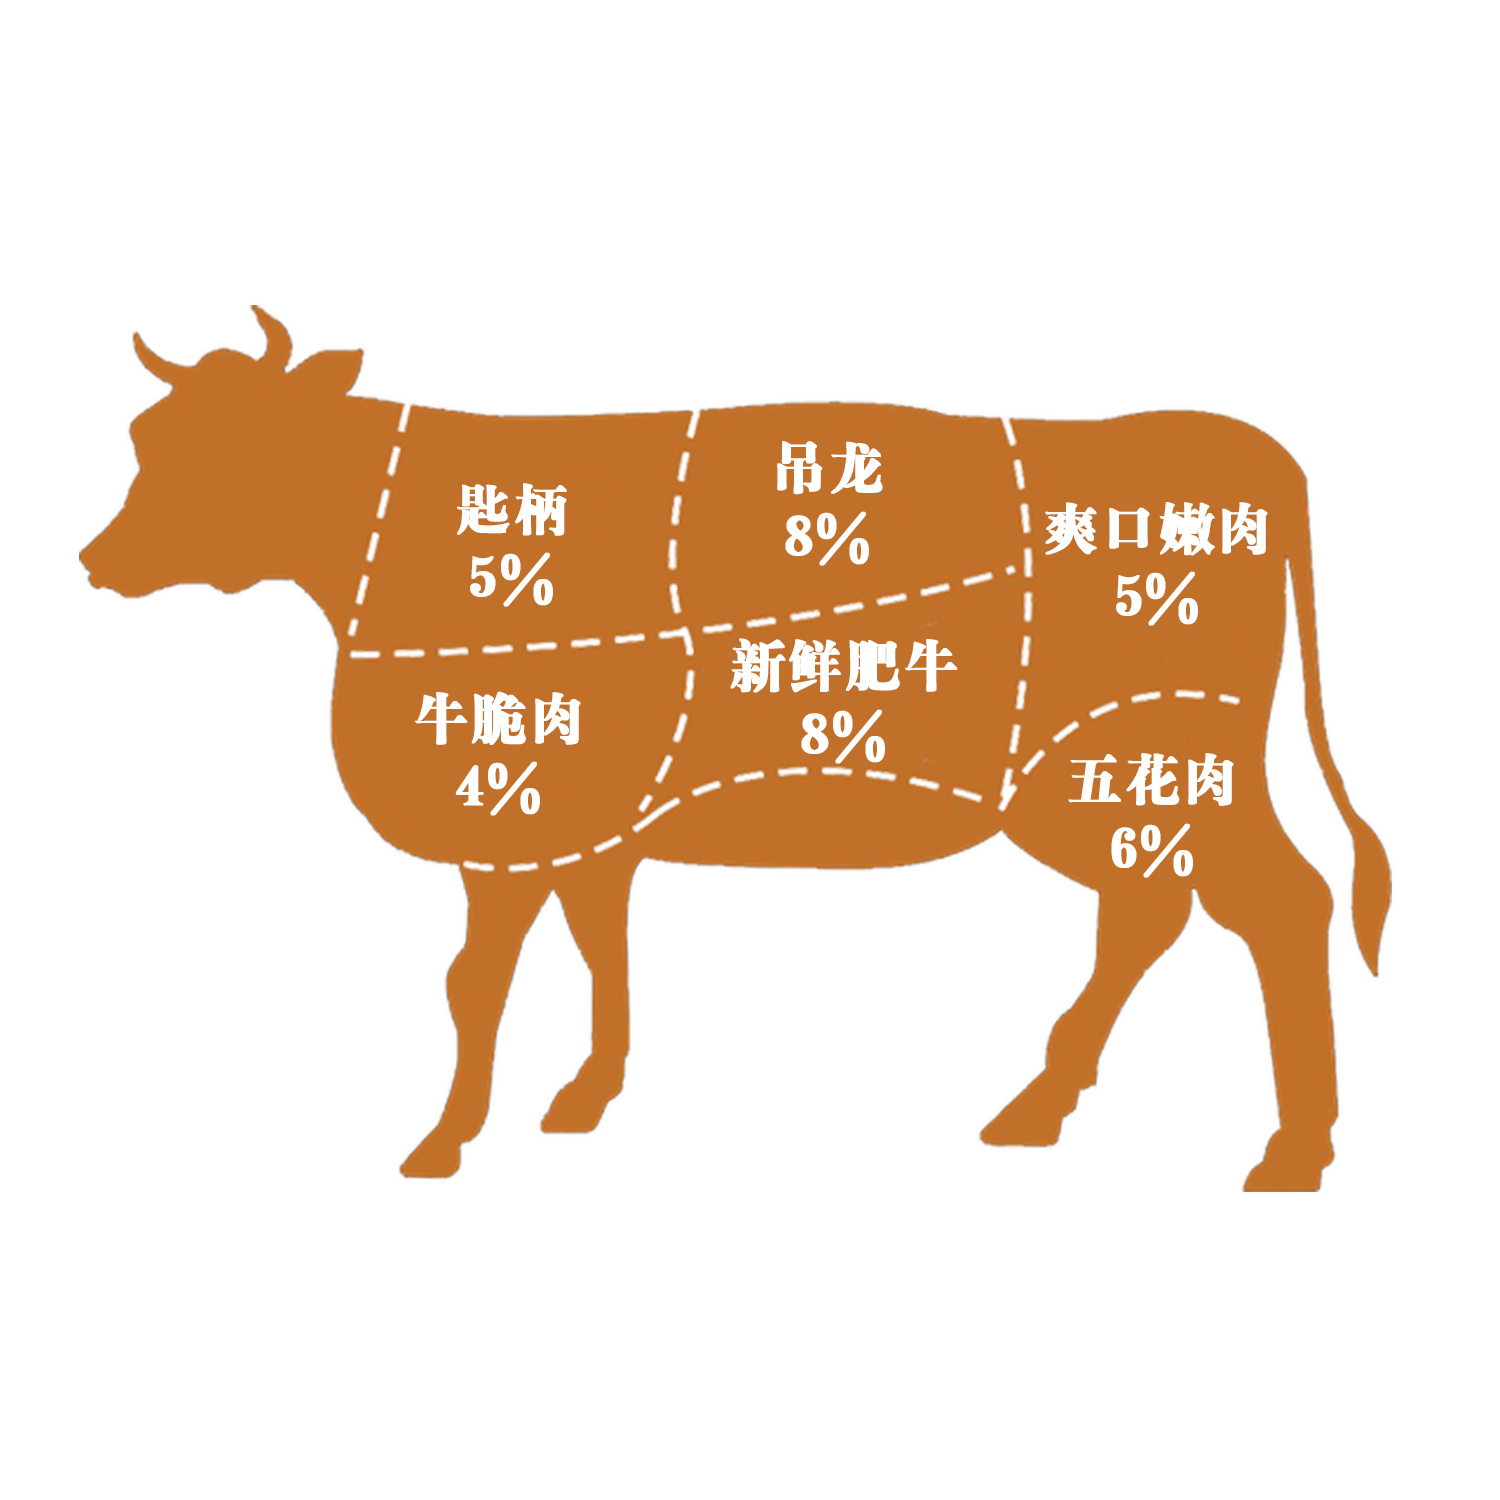 牛肉分切部位图高清图片